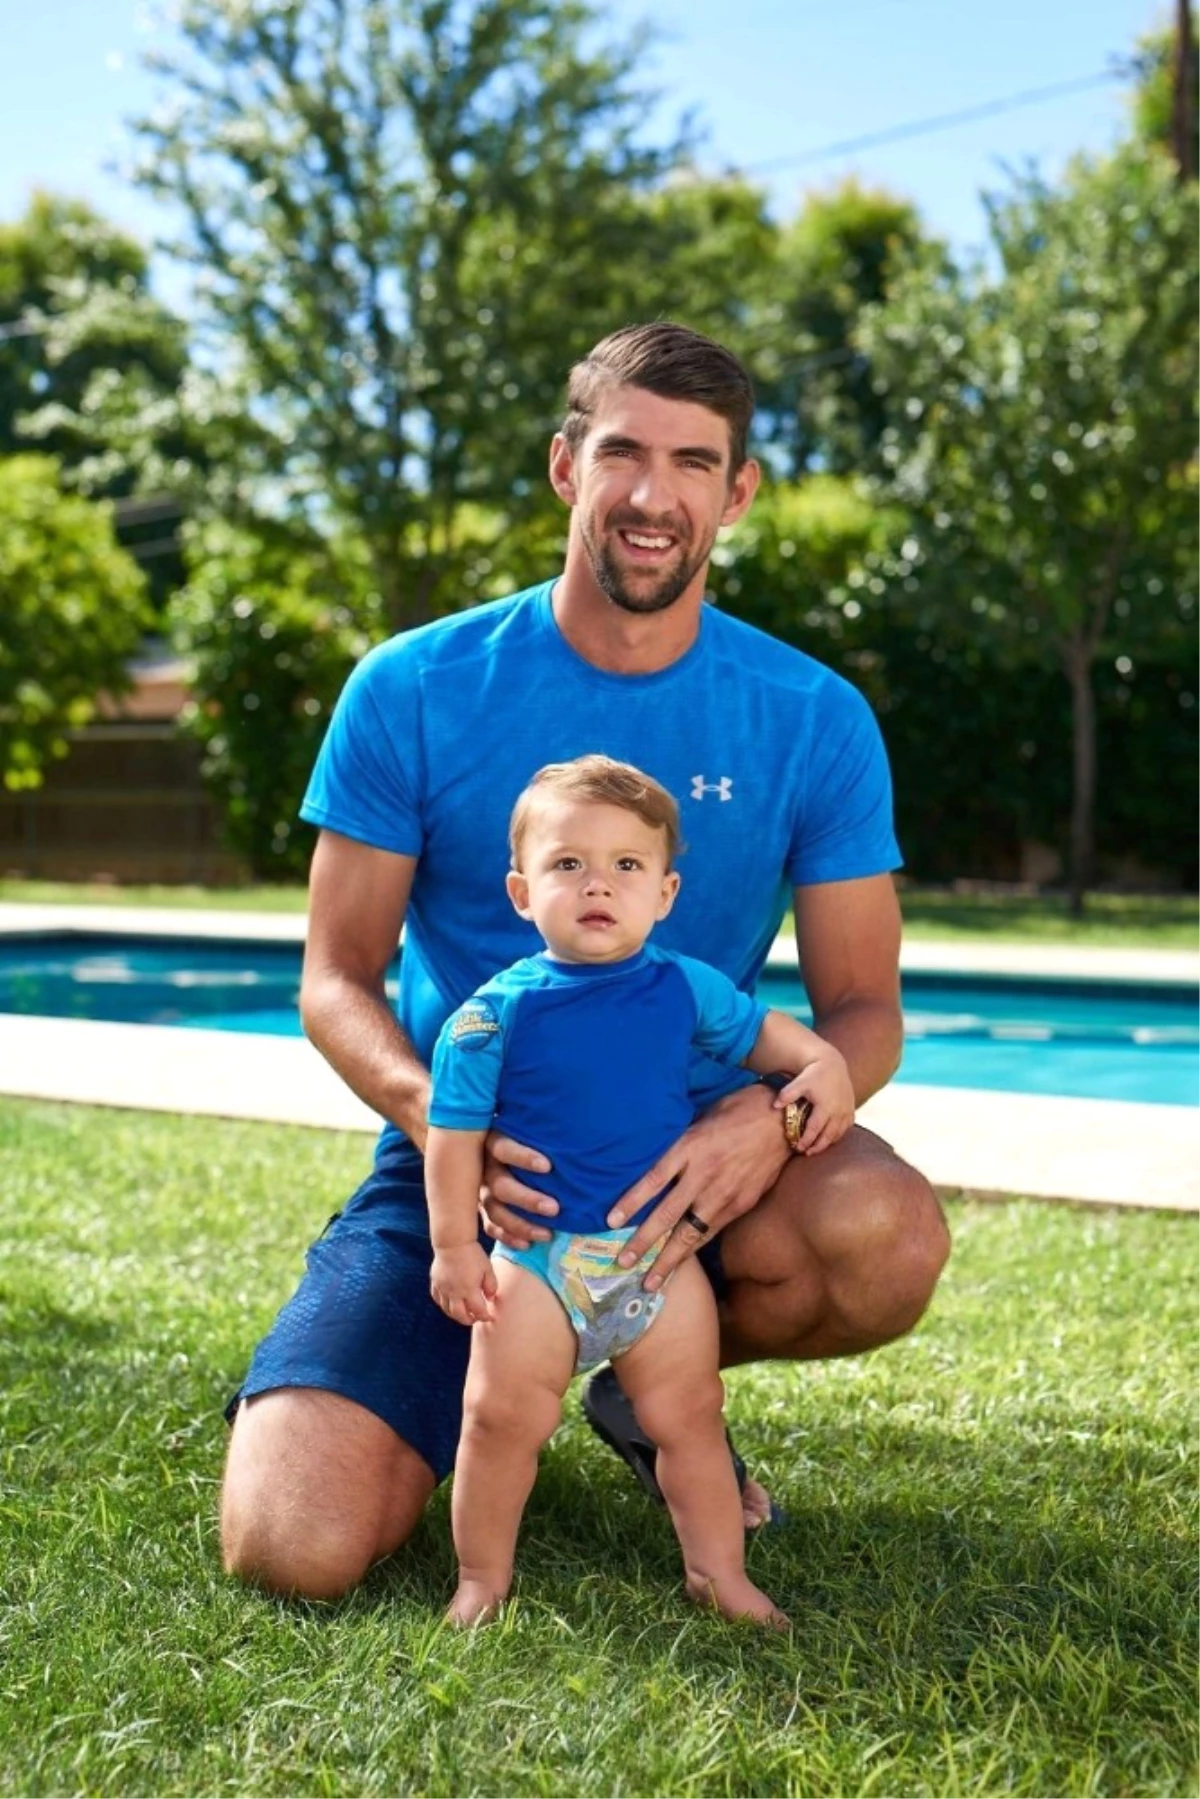 Huggies Bu Seneki Kampanyası İçin Şampiyon Yüzücü Phelps ile Anlaştı